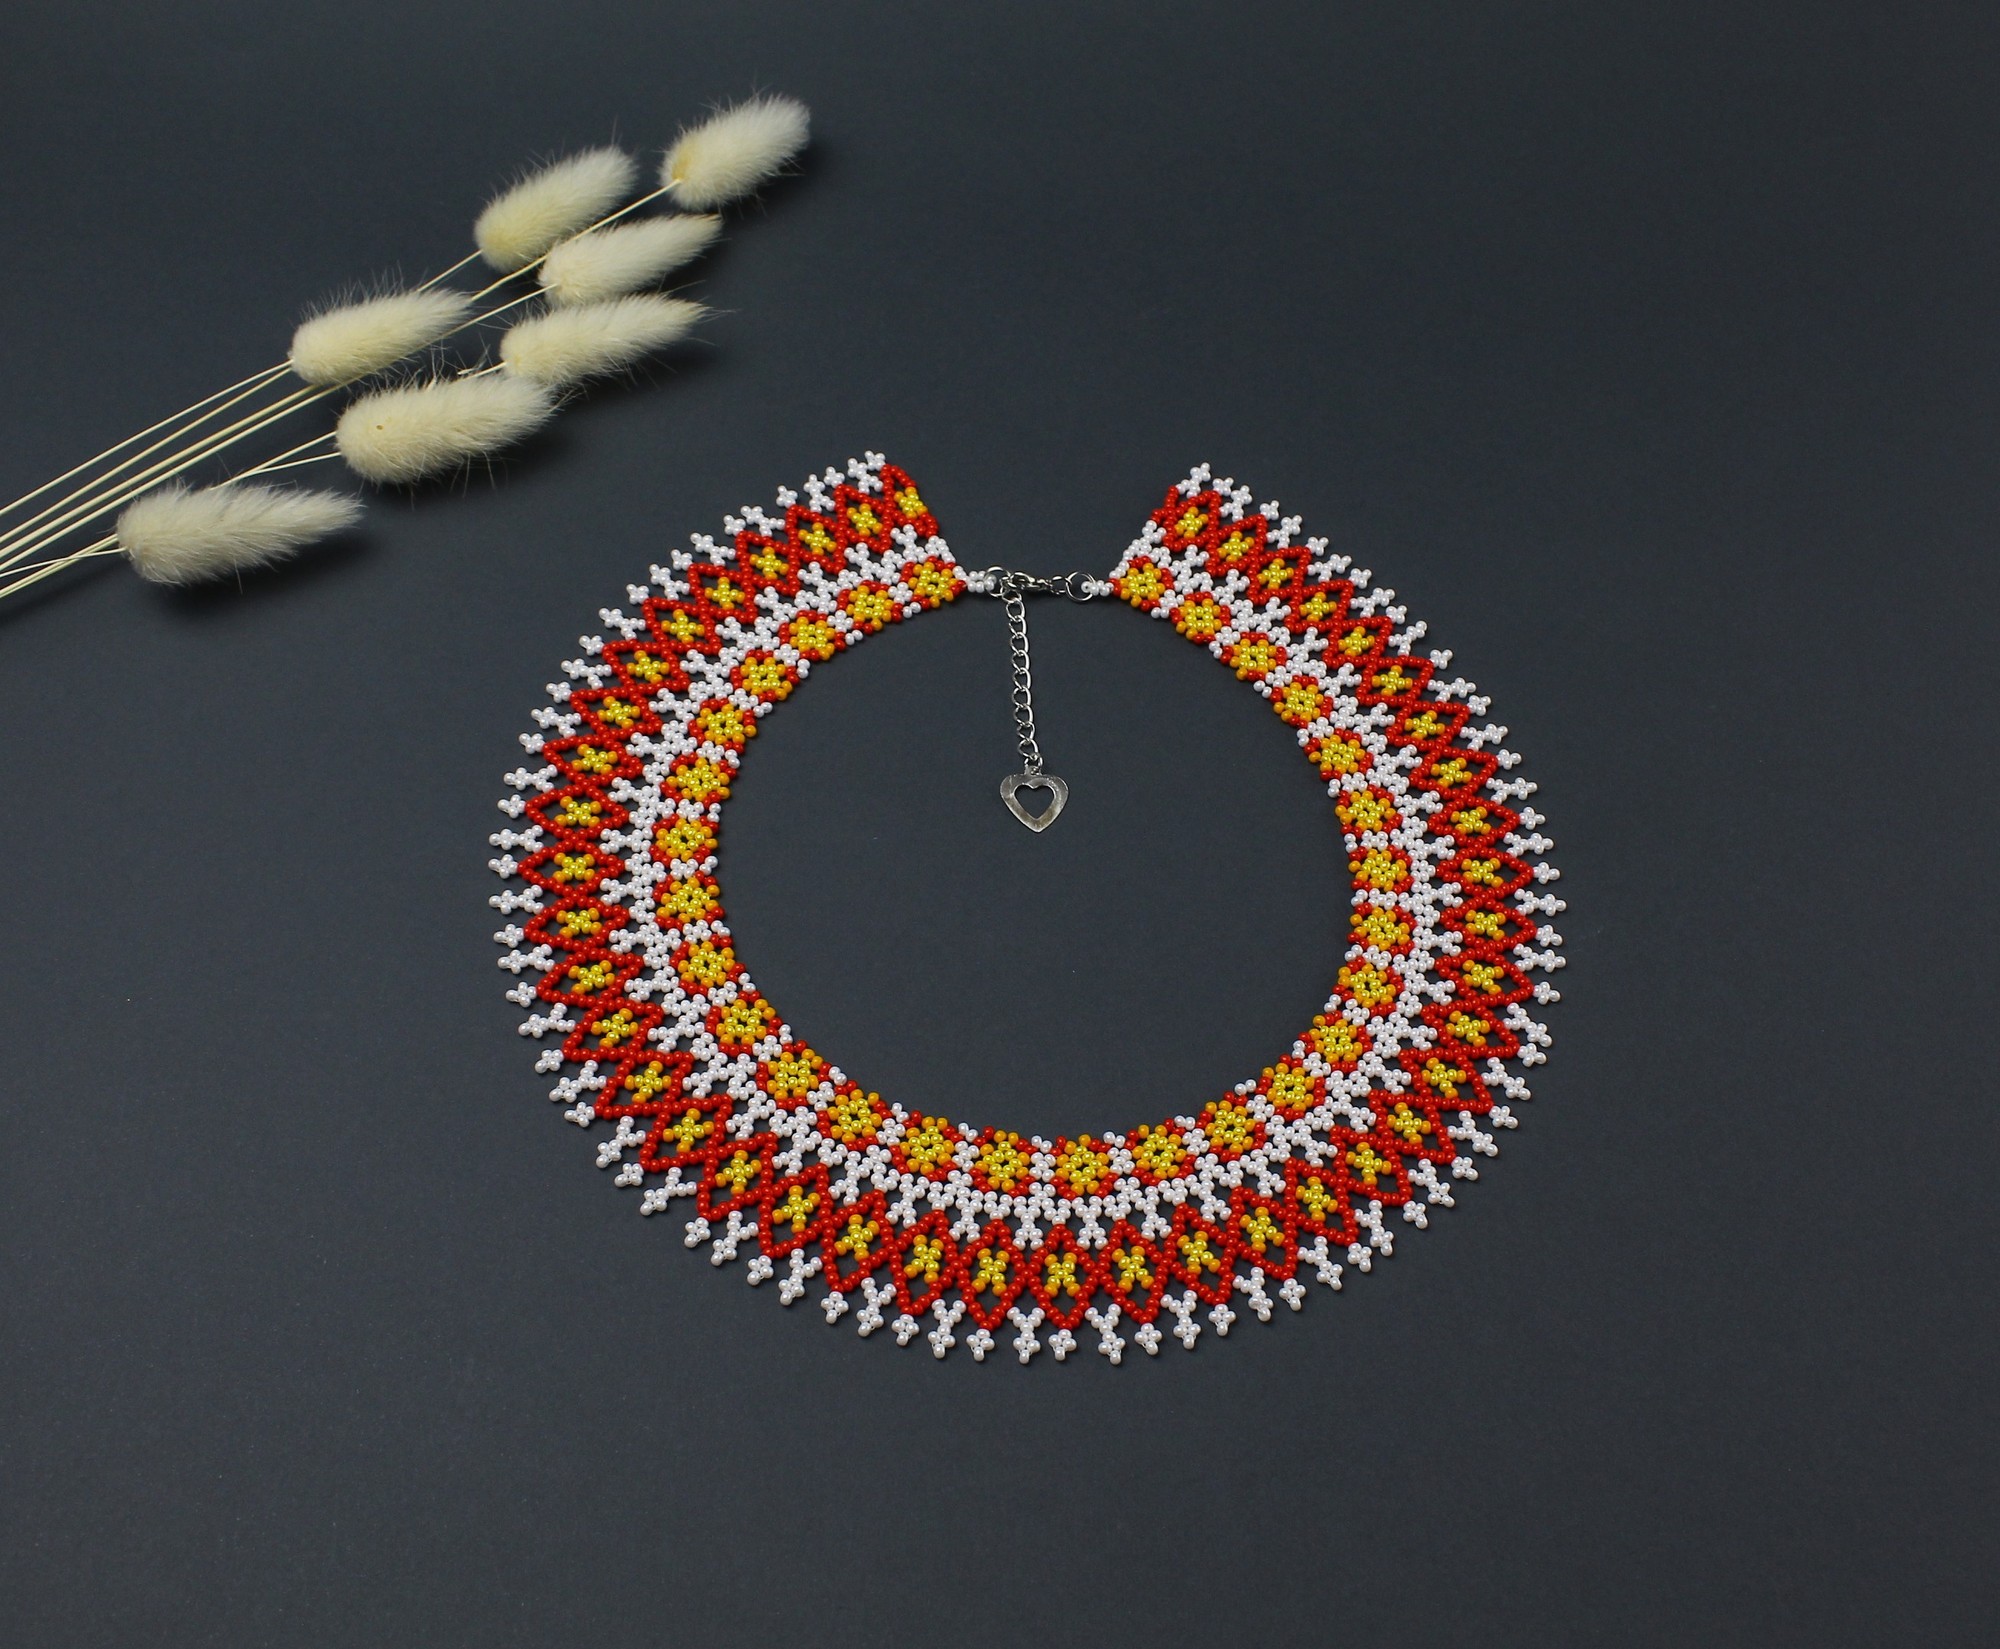 Minimalist seed bead necklace